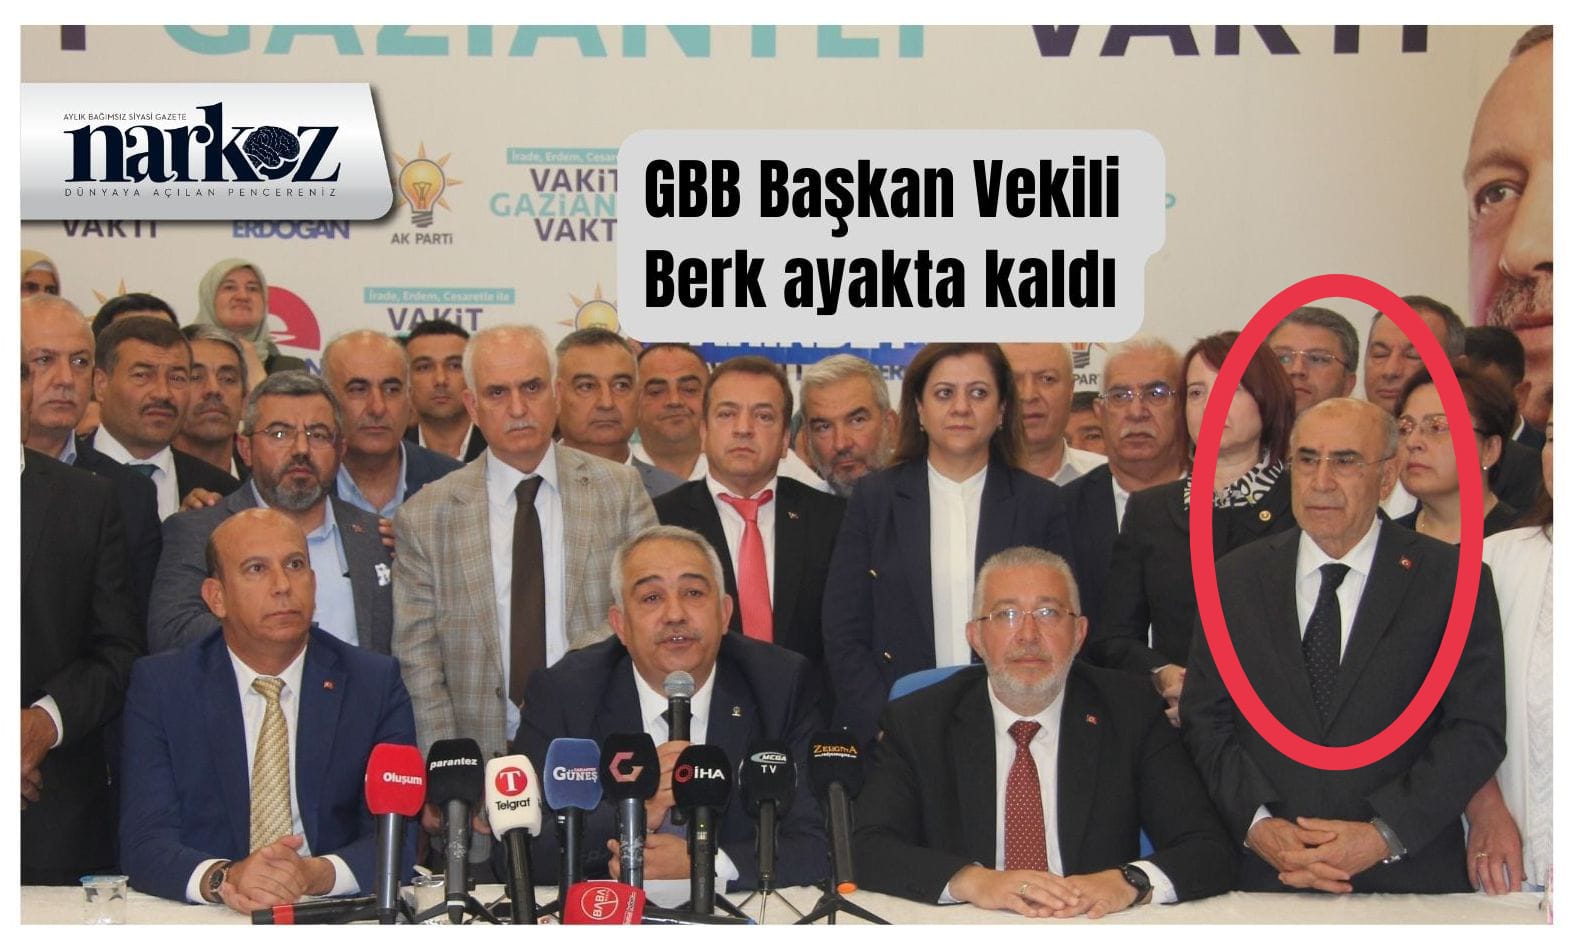 GBB Başkan vekili Dr. Mehmet Berk ayakta kaldı